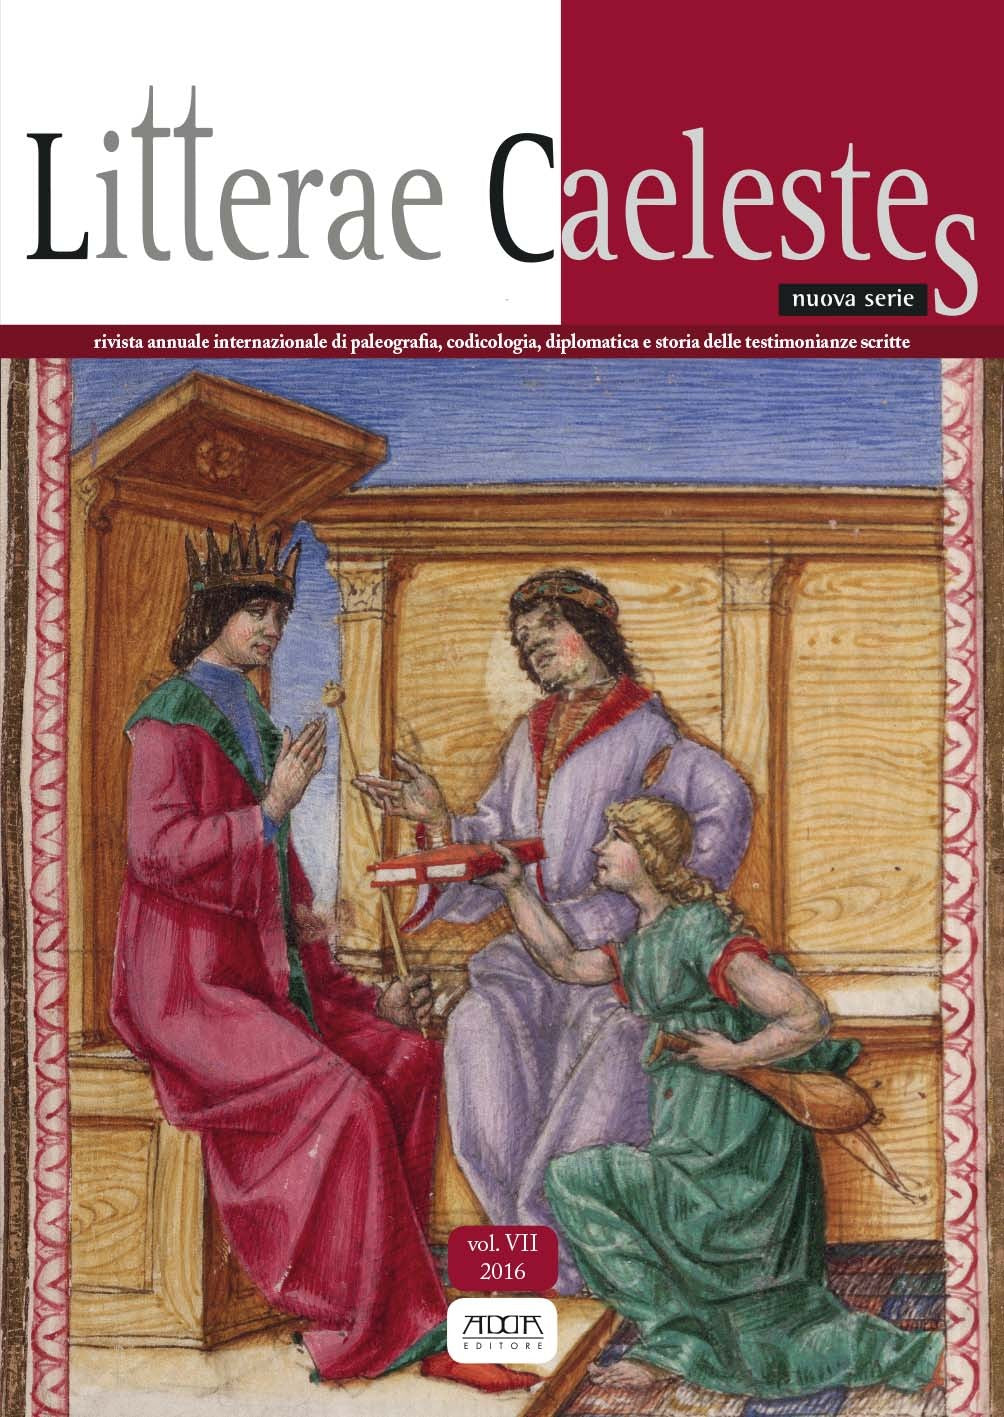 Litterae Caelestes vol. VII